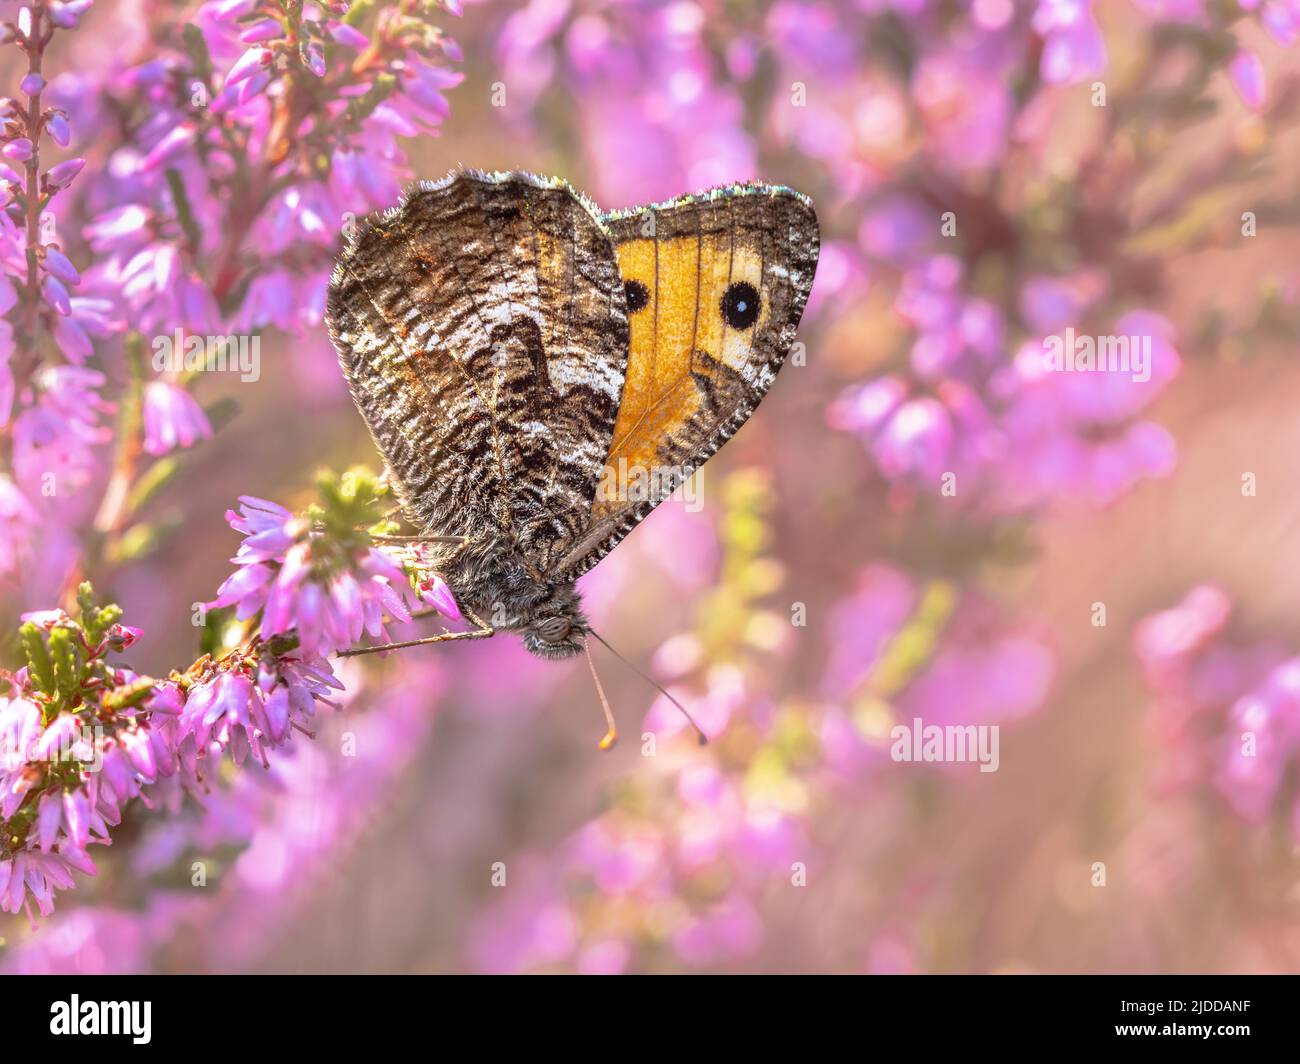 Las poblaciones de mariposas de grayling rupestre (Hipparchia semele) en los Países Bajos han disminuido drásticamente como resultado de la sequía, el cambio climático y el nitrógeno Foto de stock